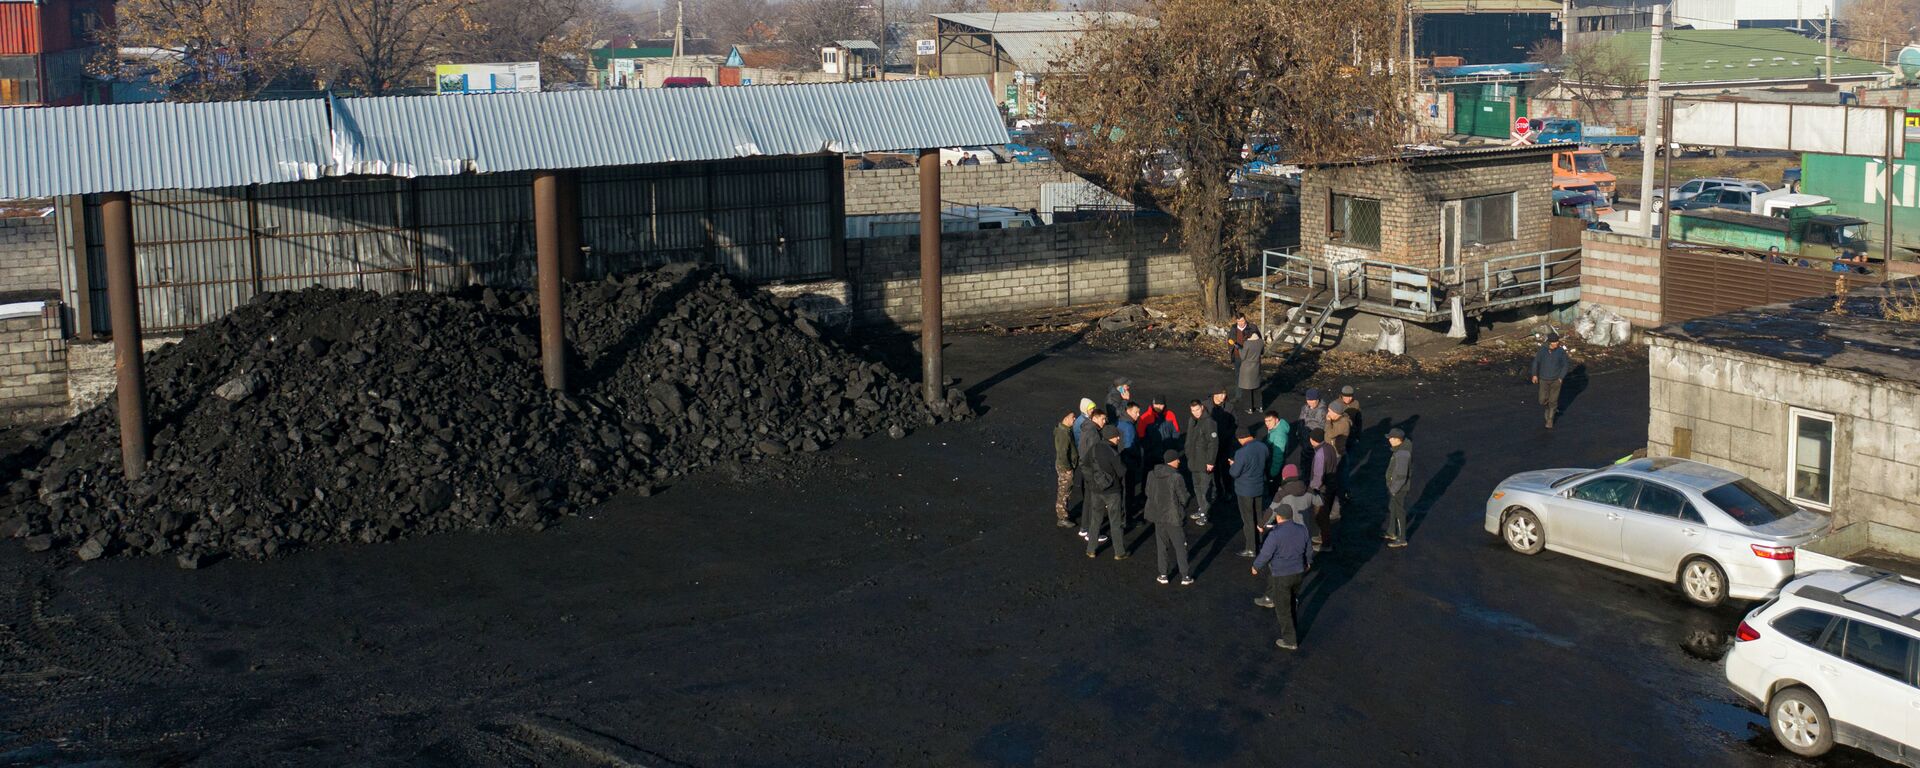 Продажа угля в Бишкеке. Архивное фото - Sputnik Кыргызстан, 1920, 01.11.2022